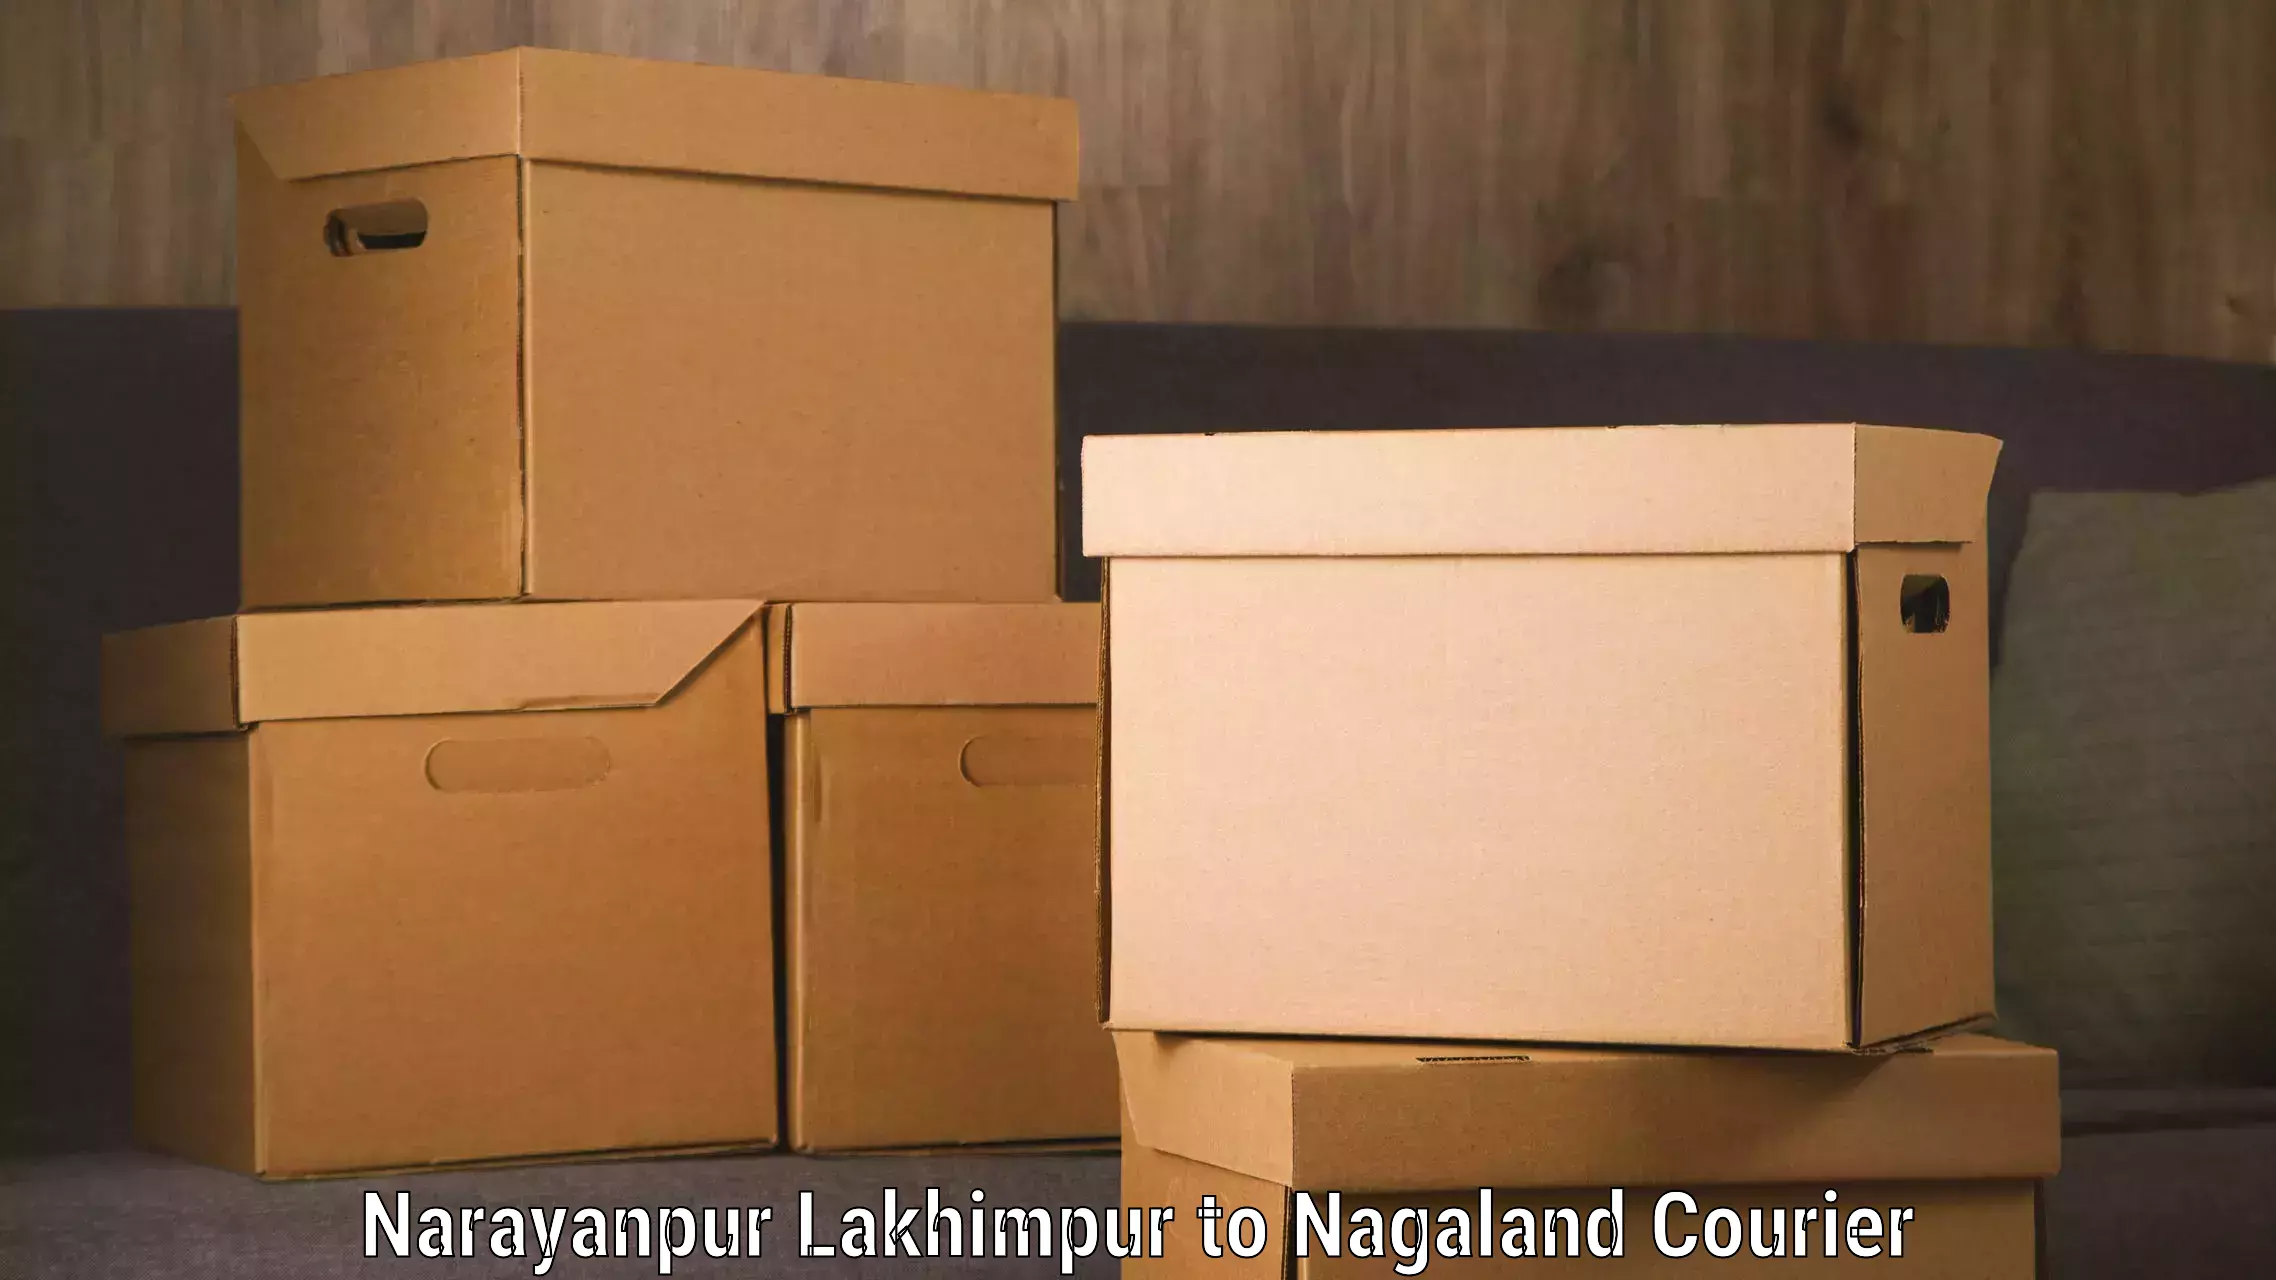 Baggage transport professionals Narayanpur Lakhimpur to Nagaland